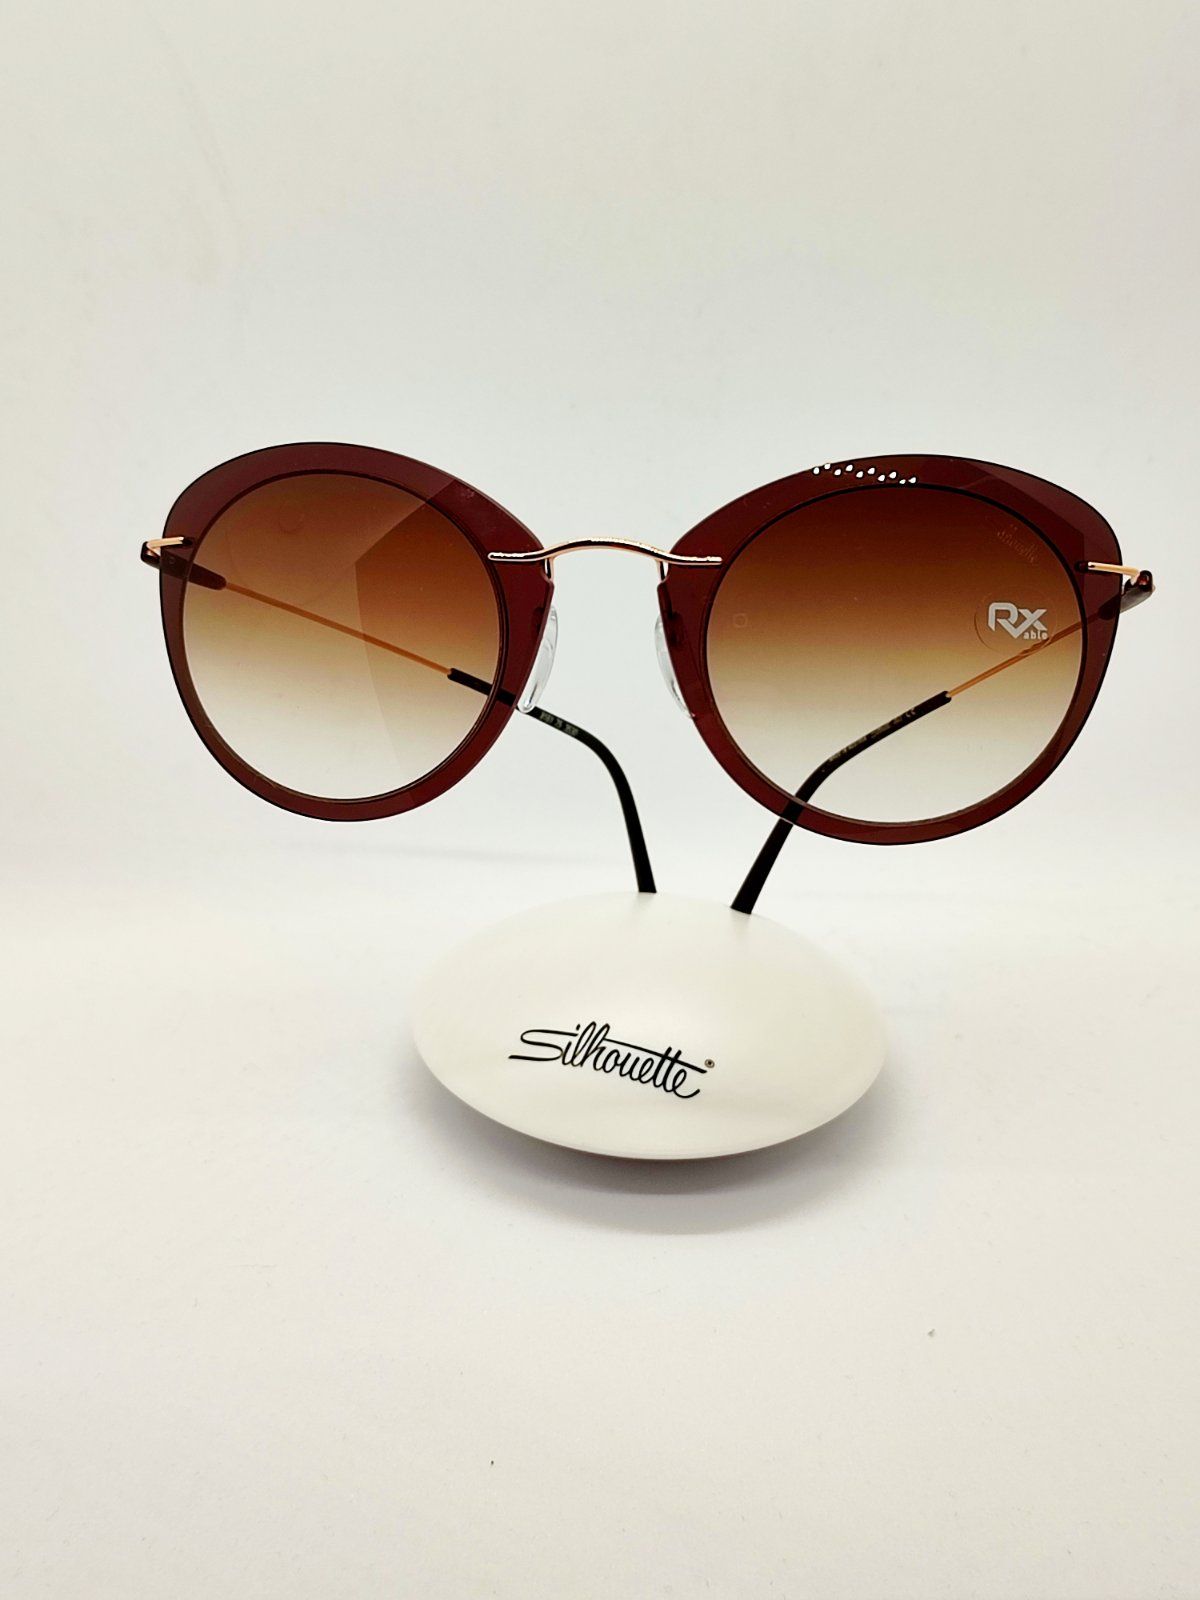 Солнцезащитные очки женские Silhouette 9 коричневые